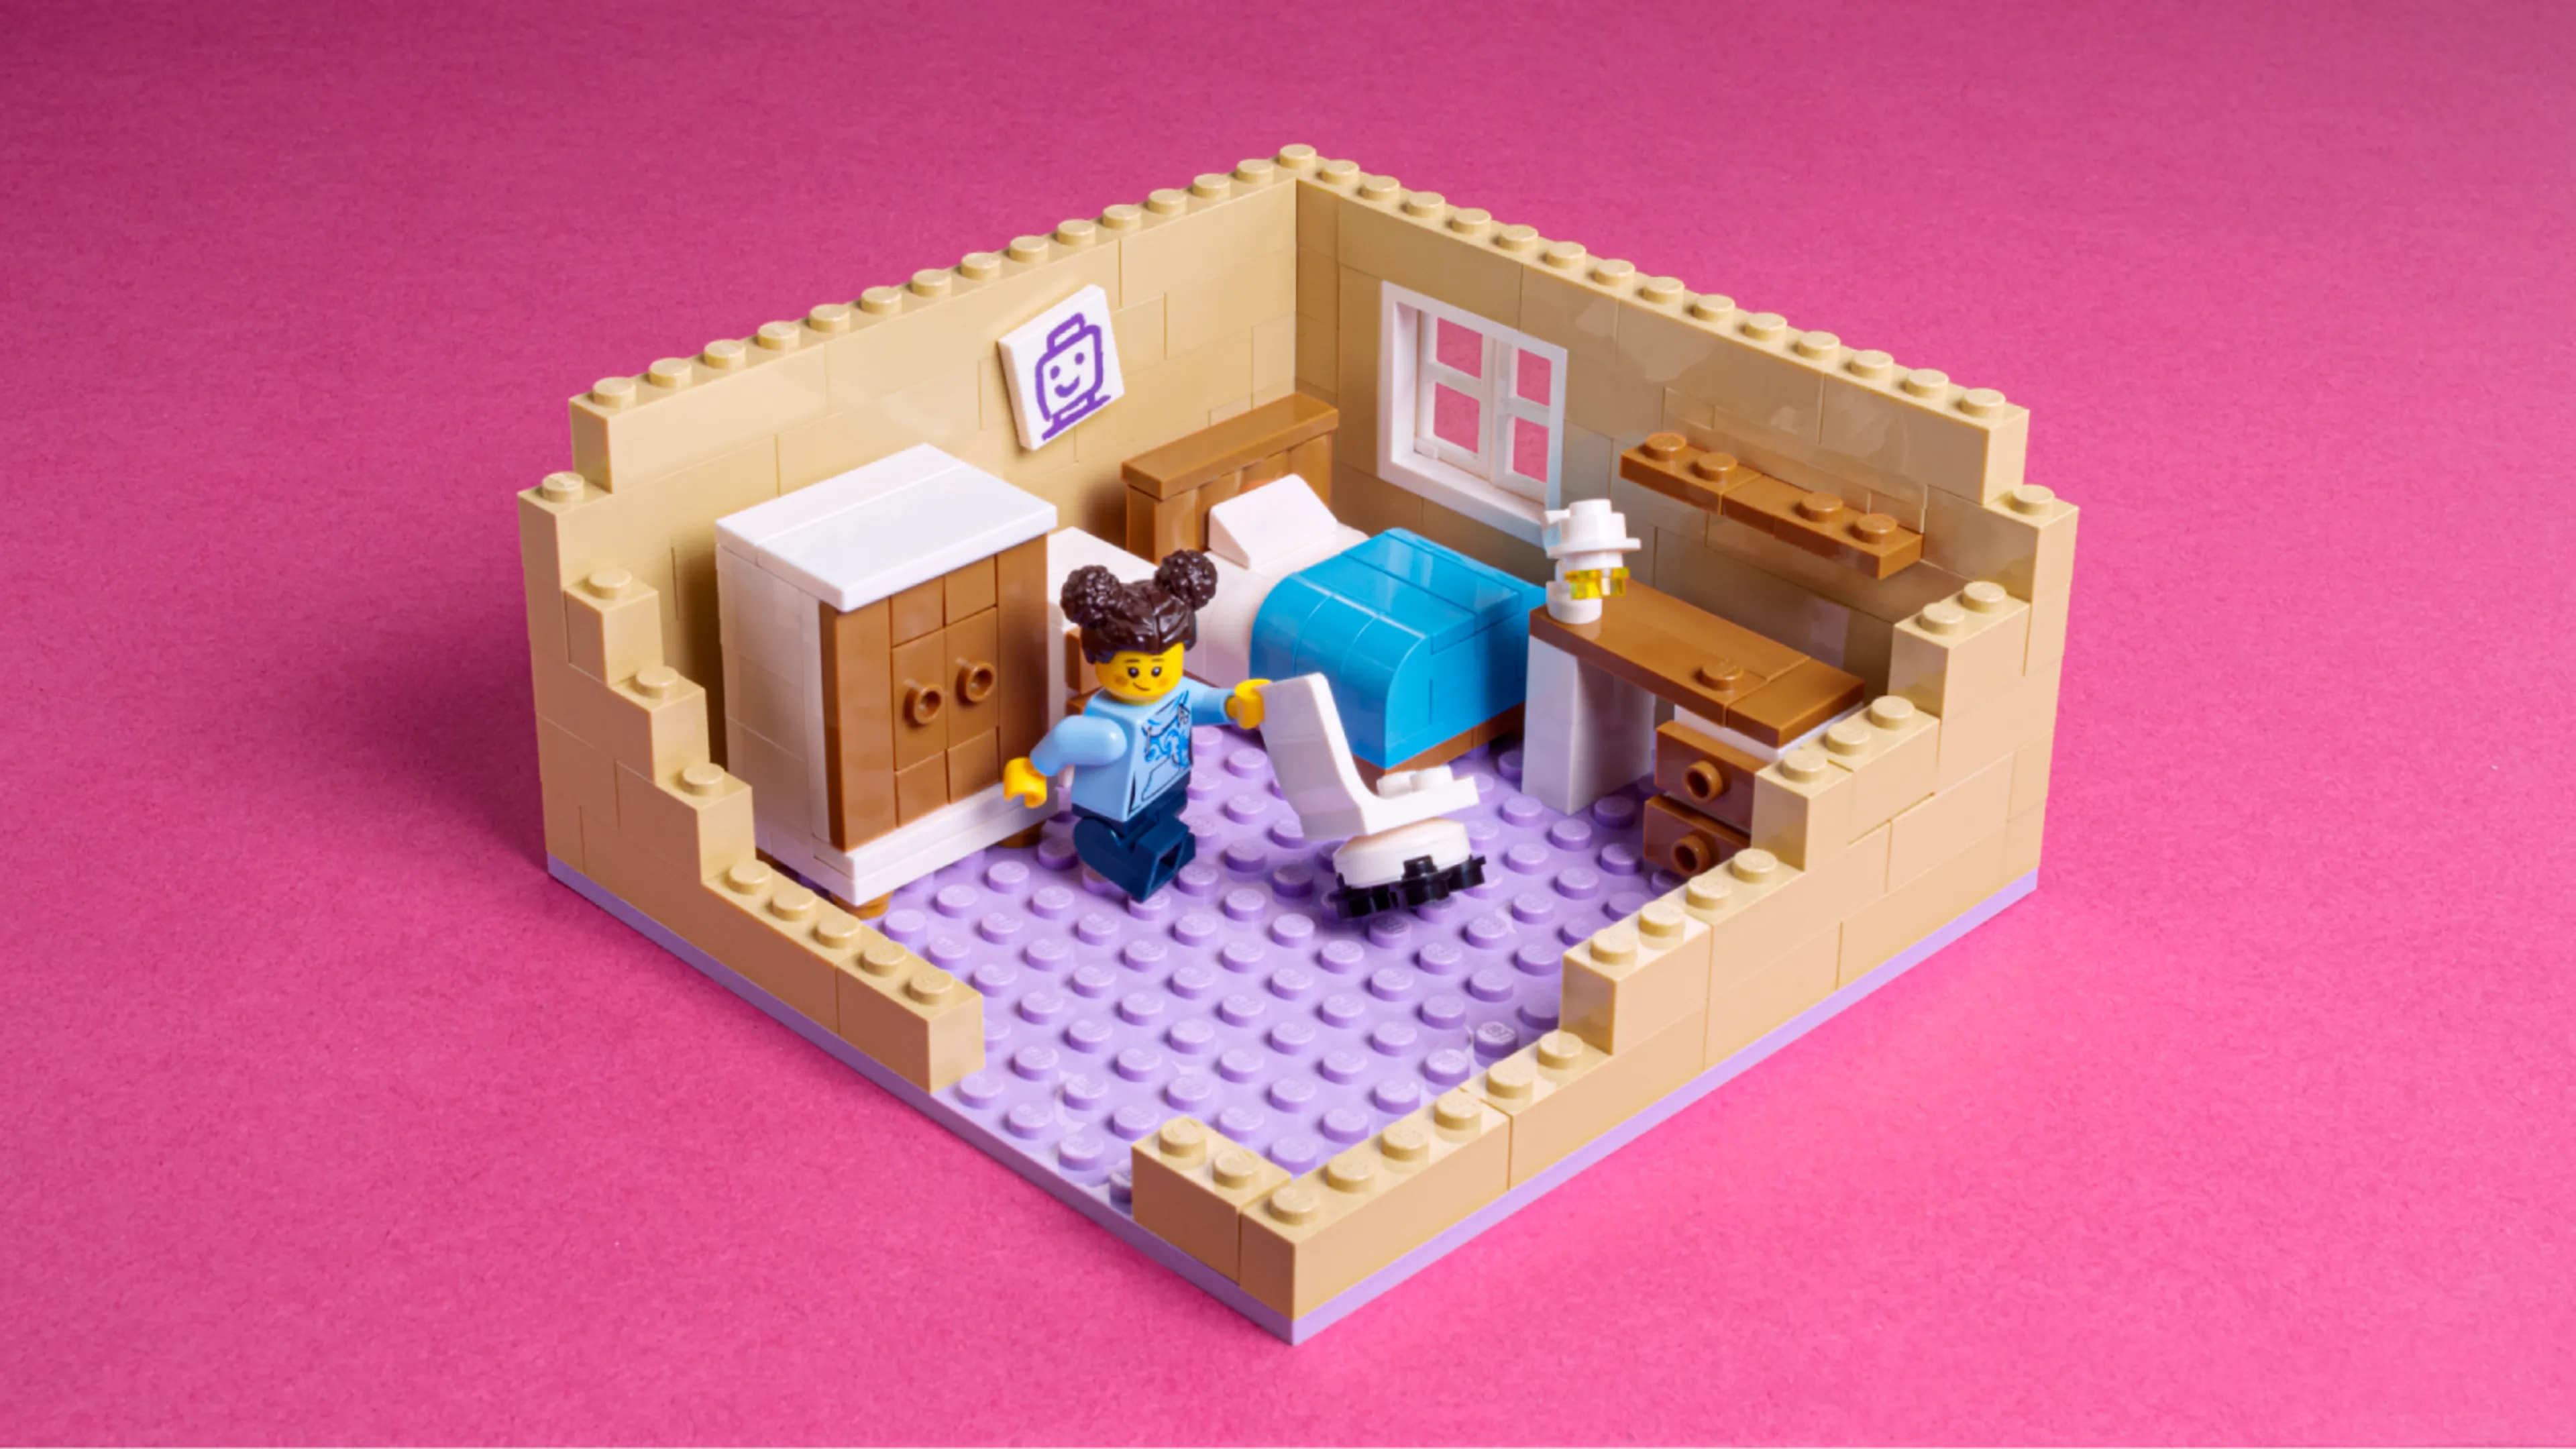 A minifigure moving LEGO furniture